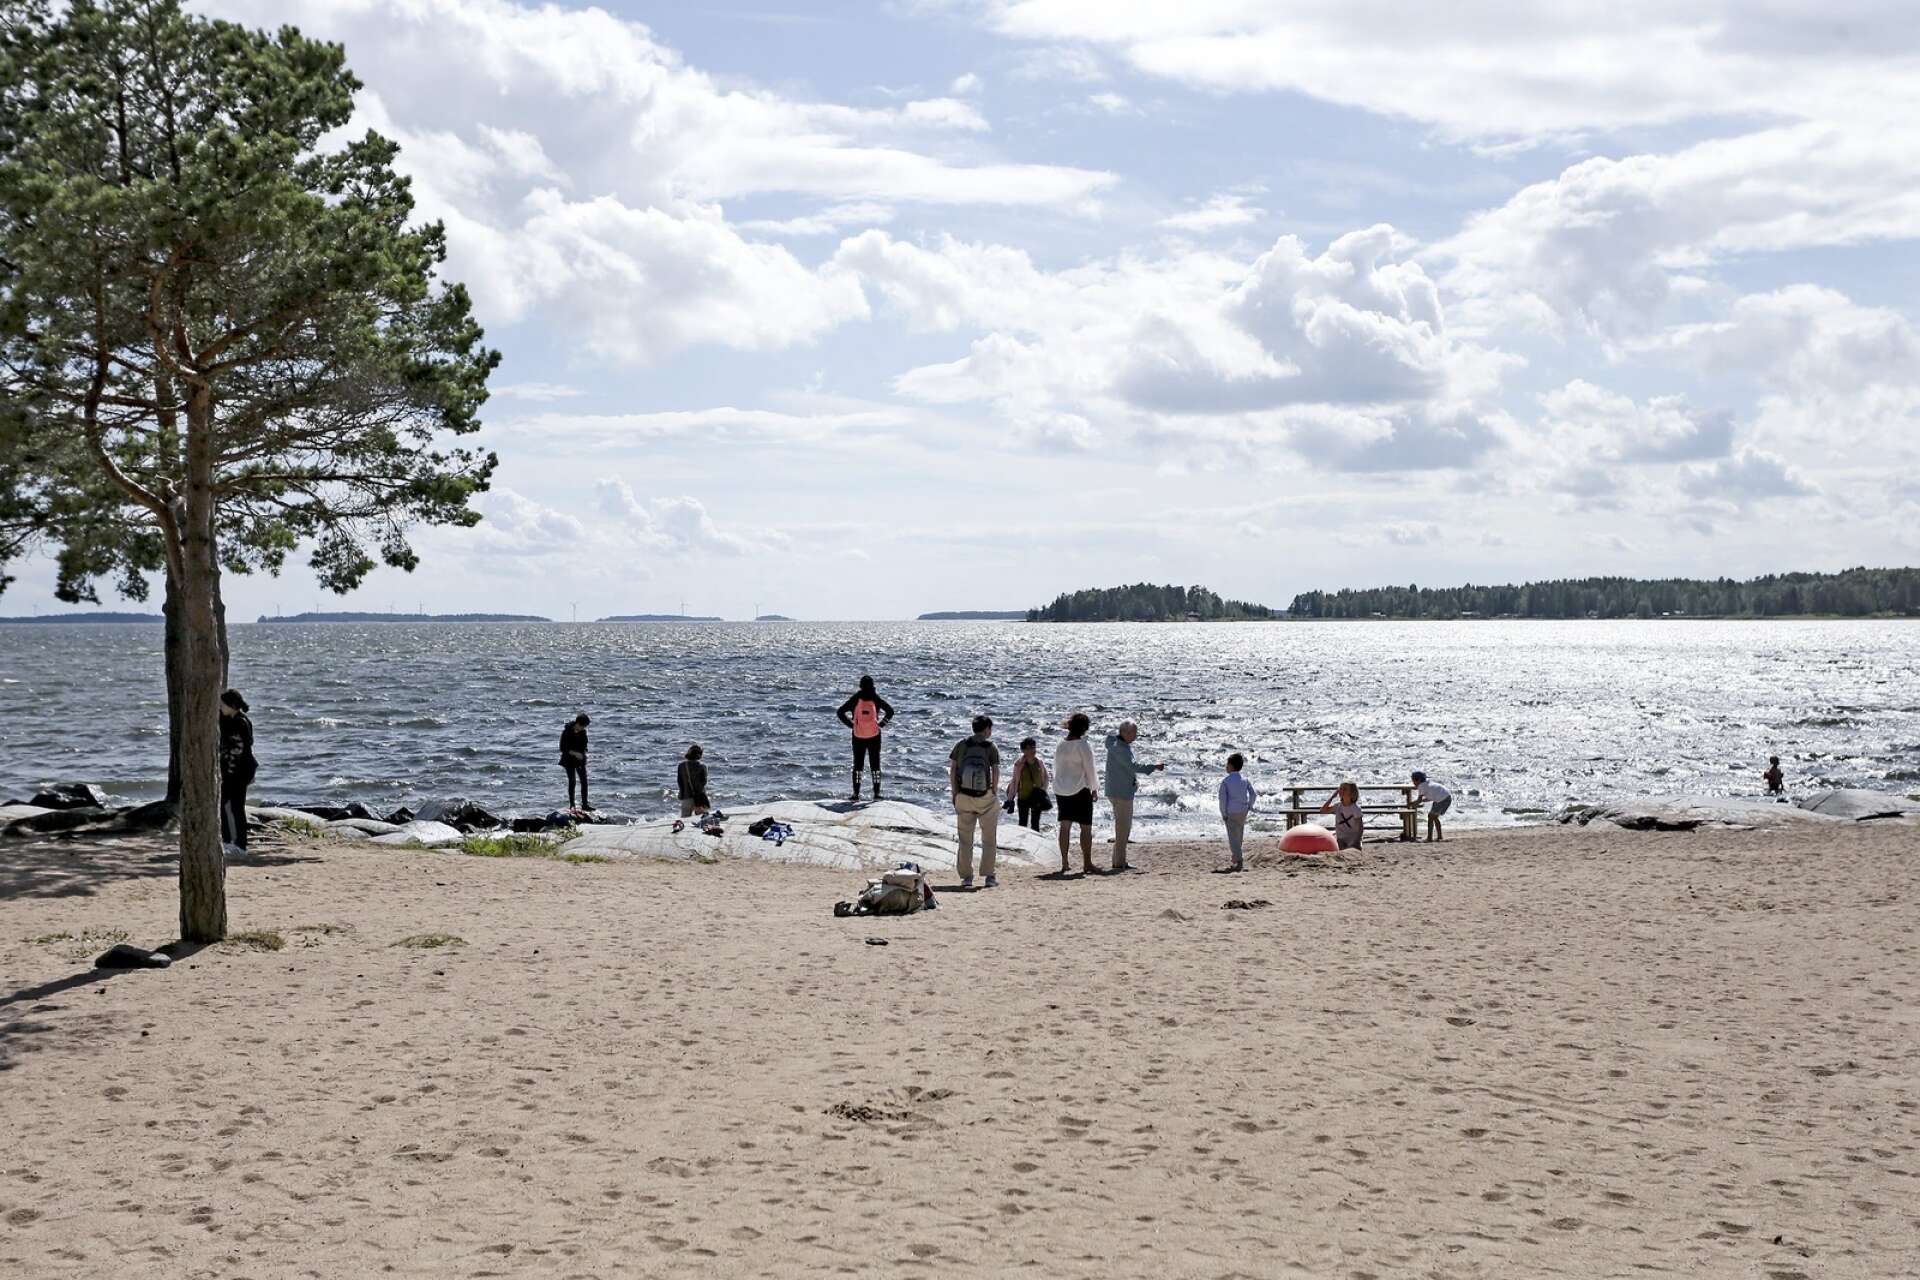 Många kinesiska turister på genomresa i Värmland har stannat vid Skutberget i Karlstad för att få en glimt av Vänern. 